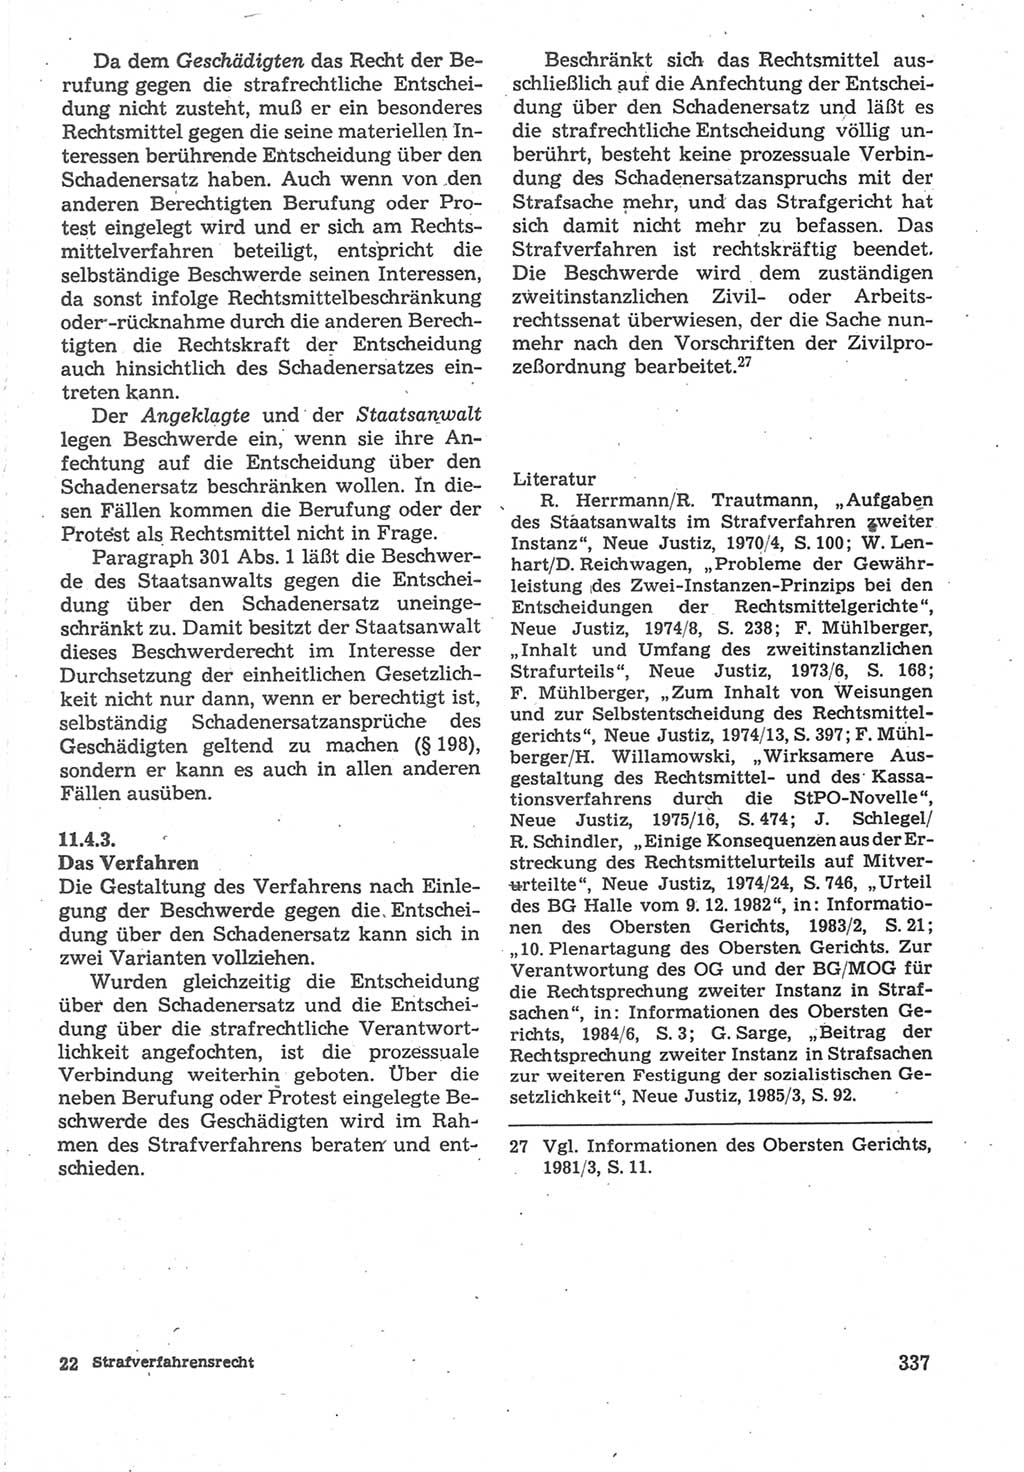 Strafverfahrensrecht [Deutsche Demokratische Republik (DDR)], Lehrbuch 1987, Seite 337 (Strafverf.-R. DDR Lb. 1987, S. 337)